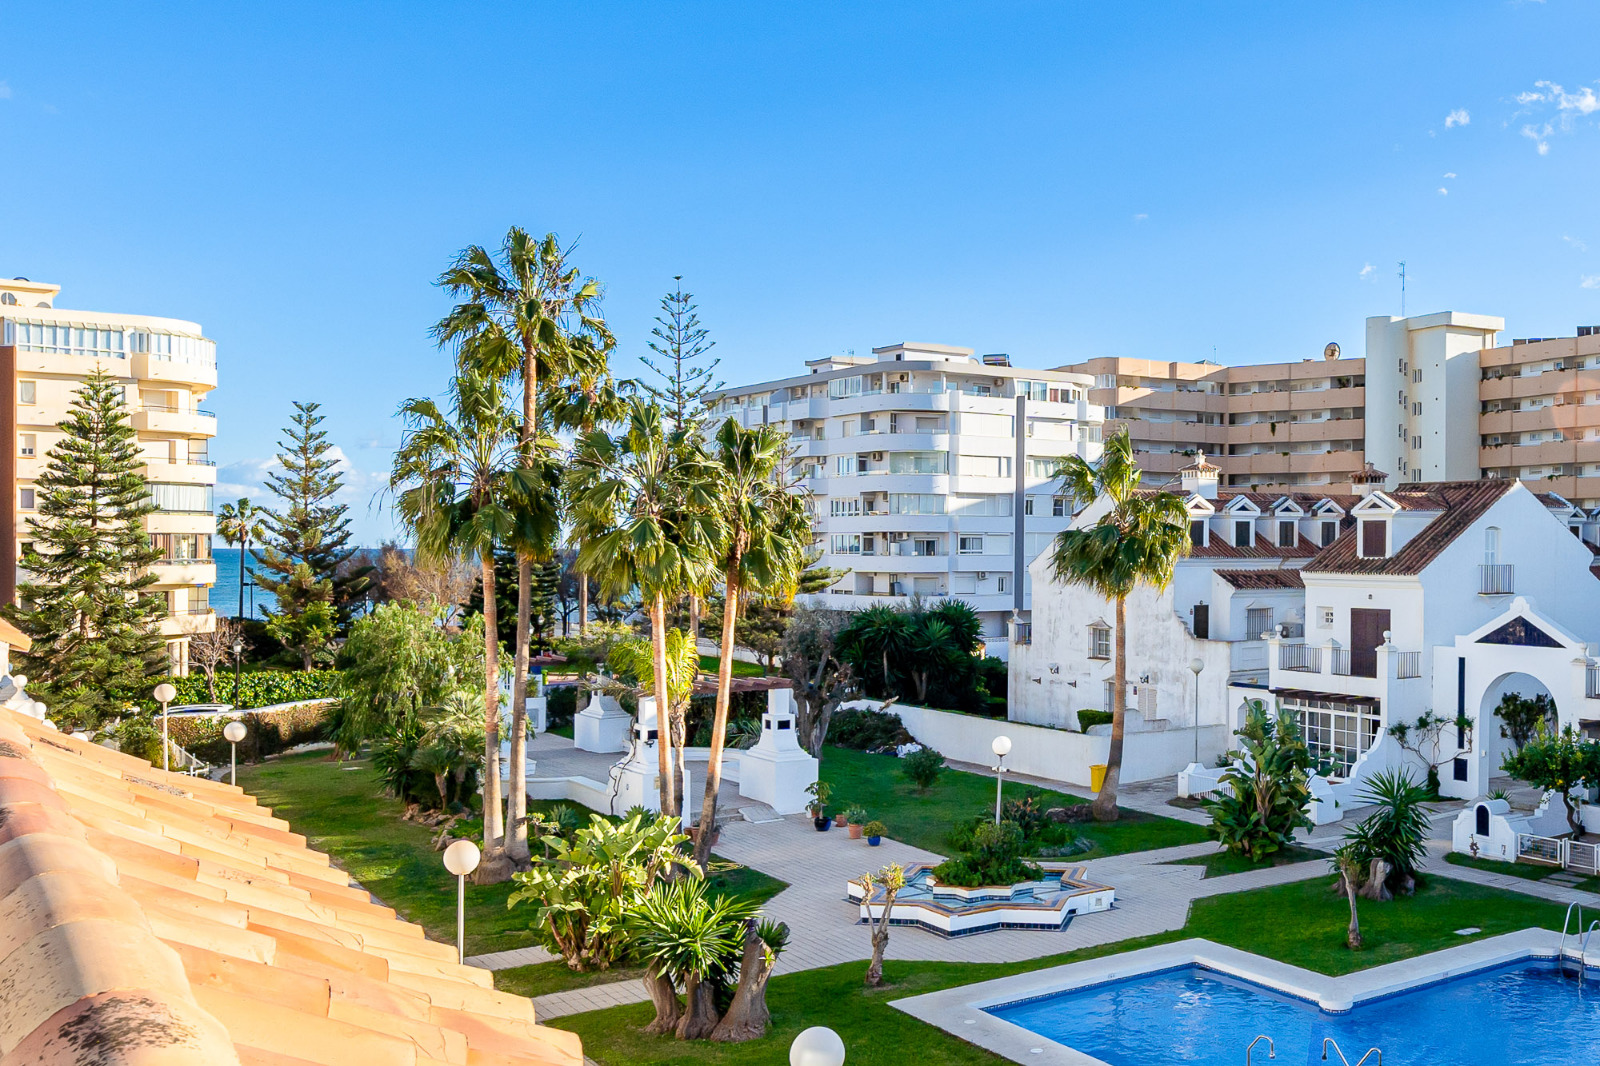 Malaga, världens bästa stad